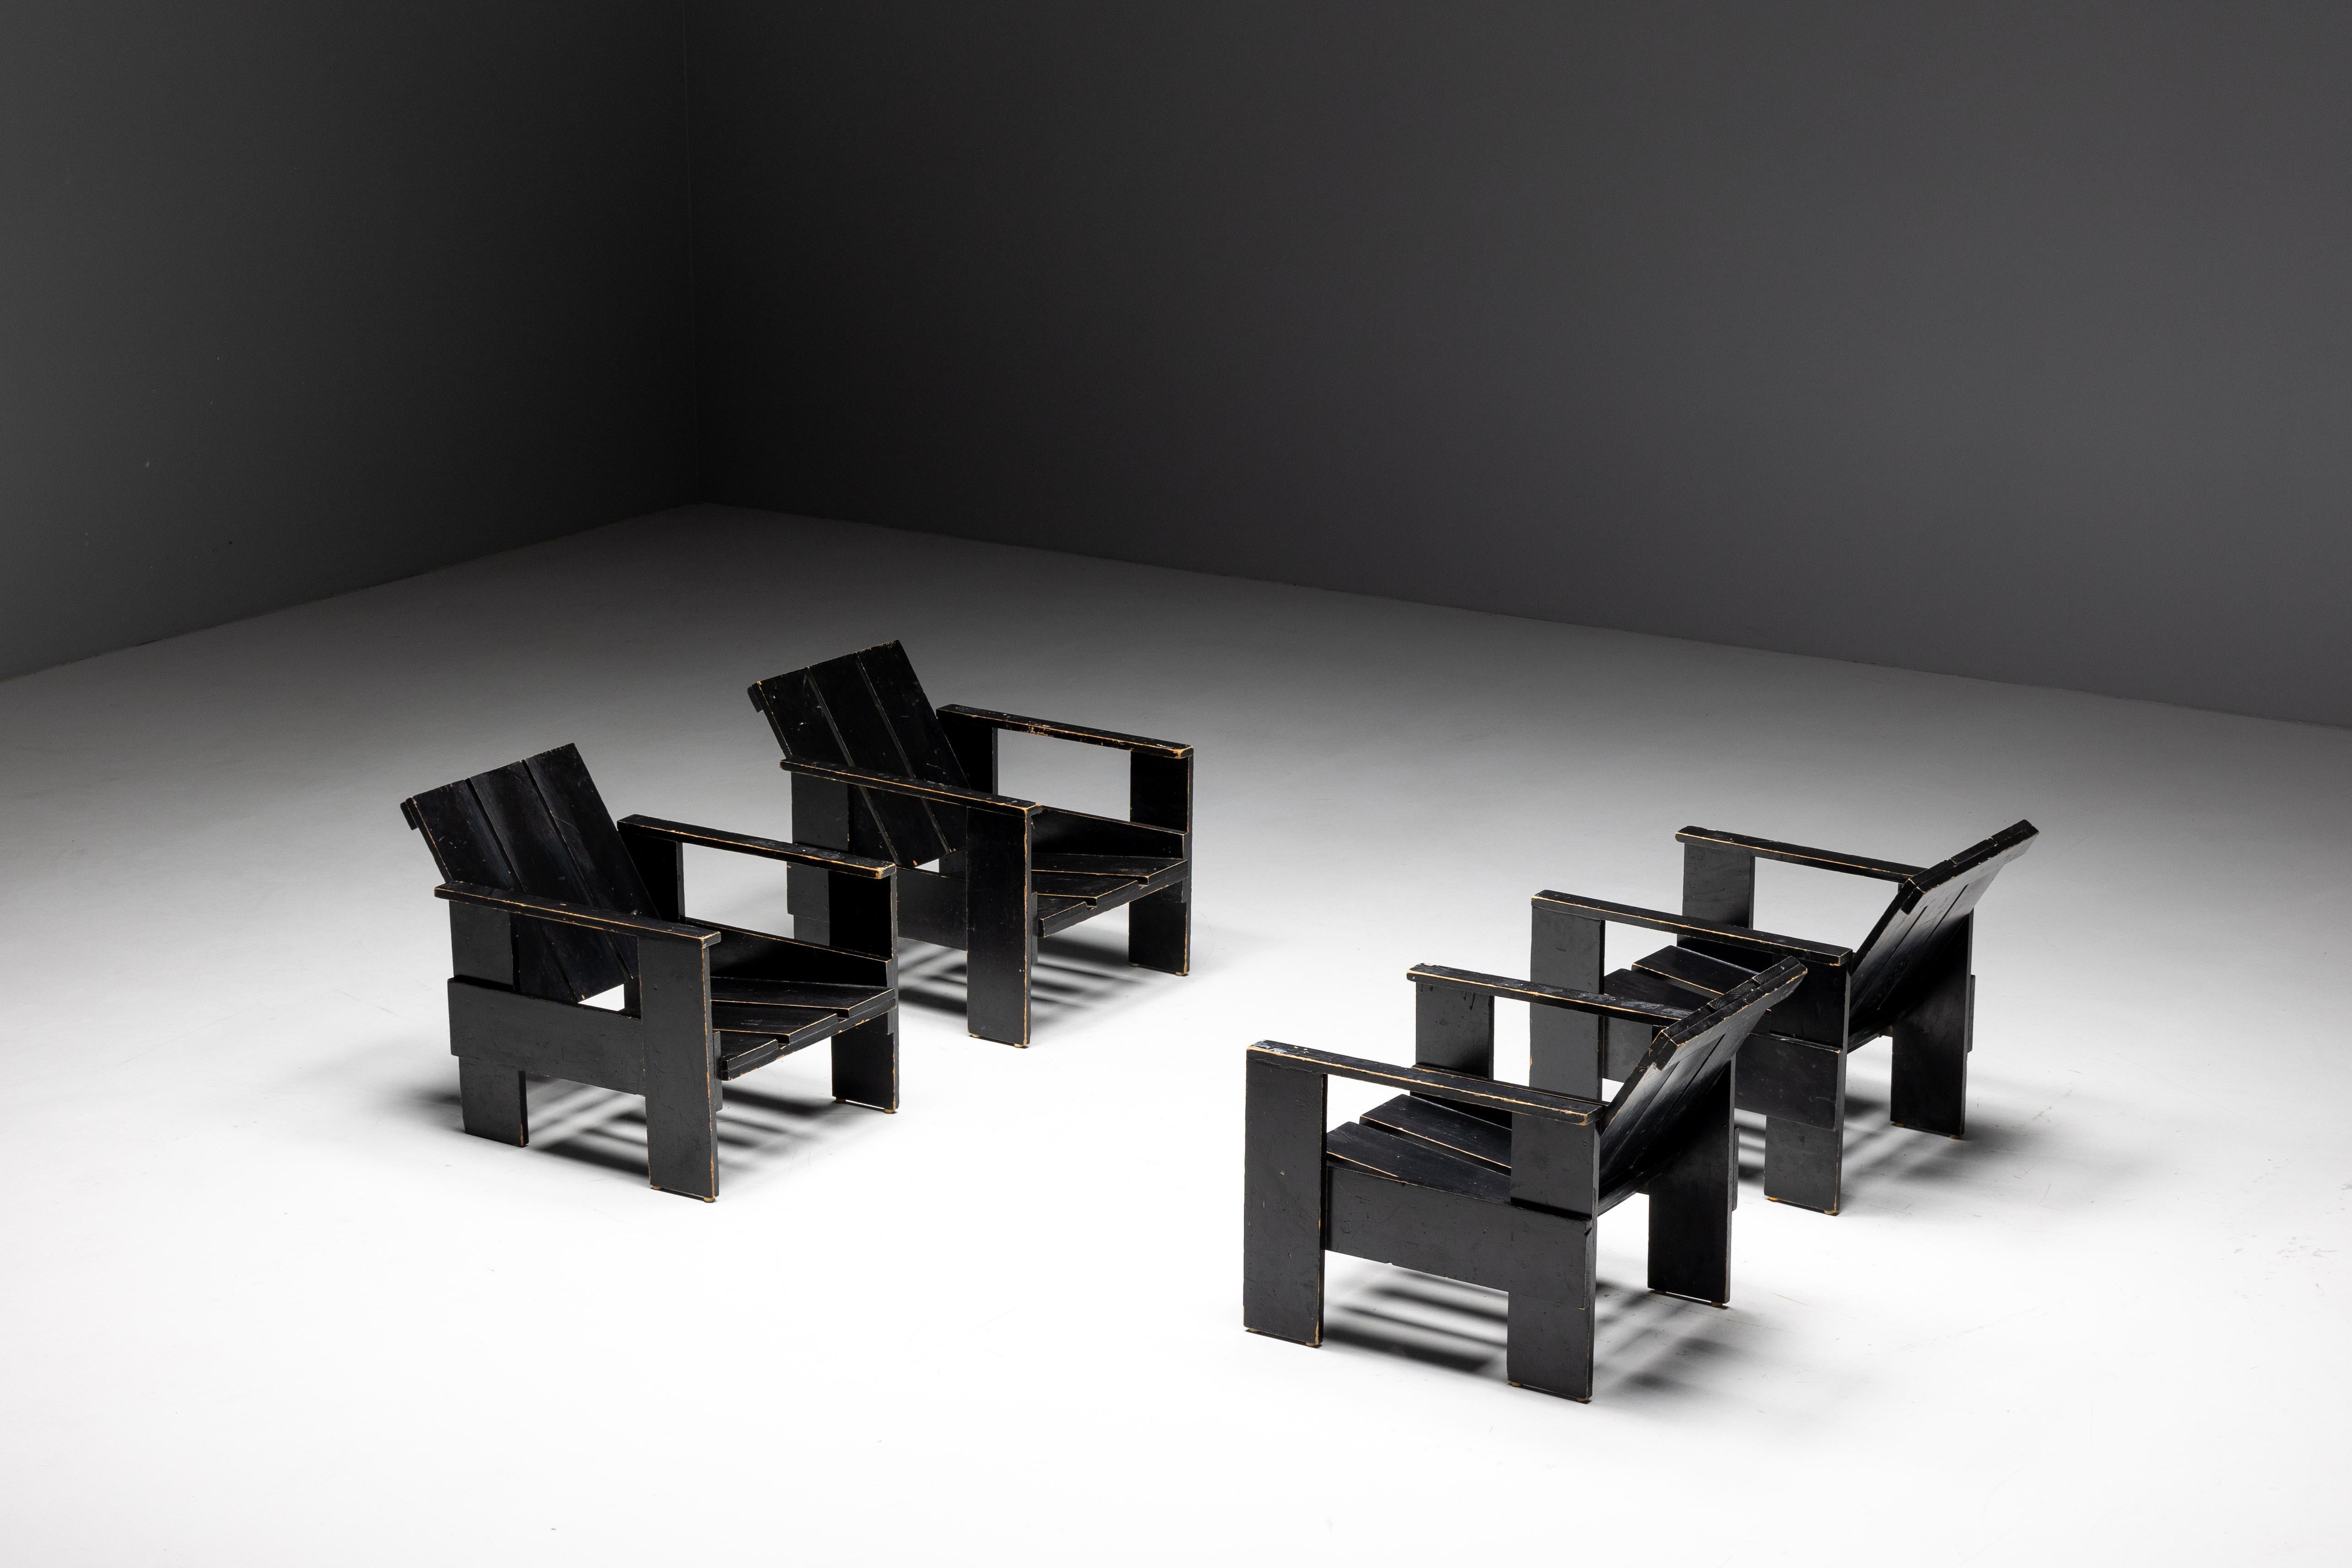 Chaises en forme de caisse noire de Gerrit Rietveld, fabriquées vers 1960 aux Pays-Bas, ces chaises témoignent de l'approche avant-gardiste de Rietveld en matière de conception de mobilier. Figure pionnière du mouvement De Stijl, Rietveld a